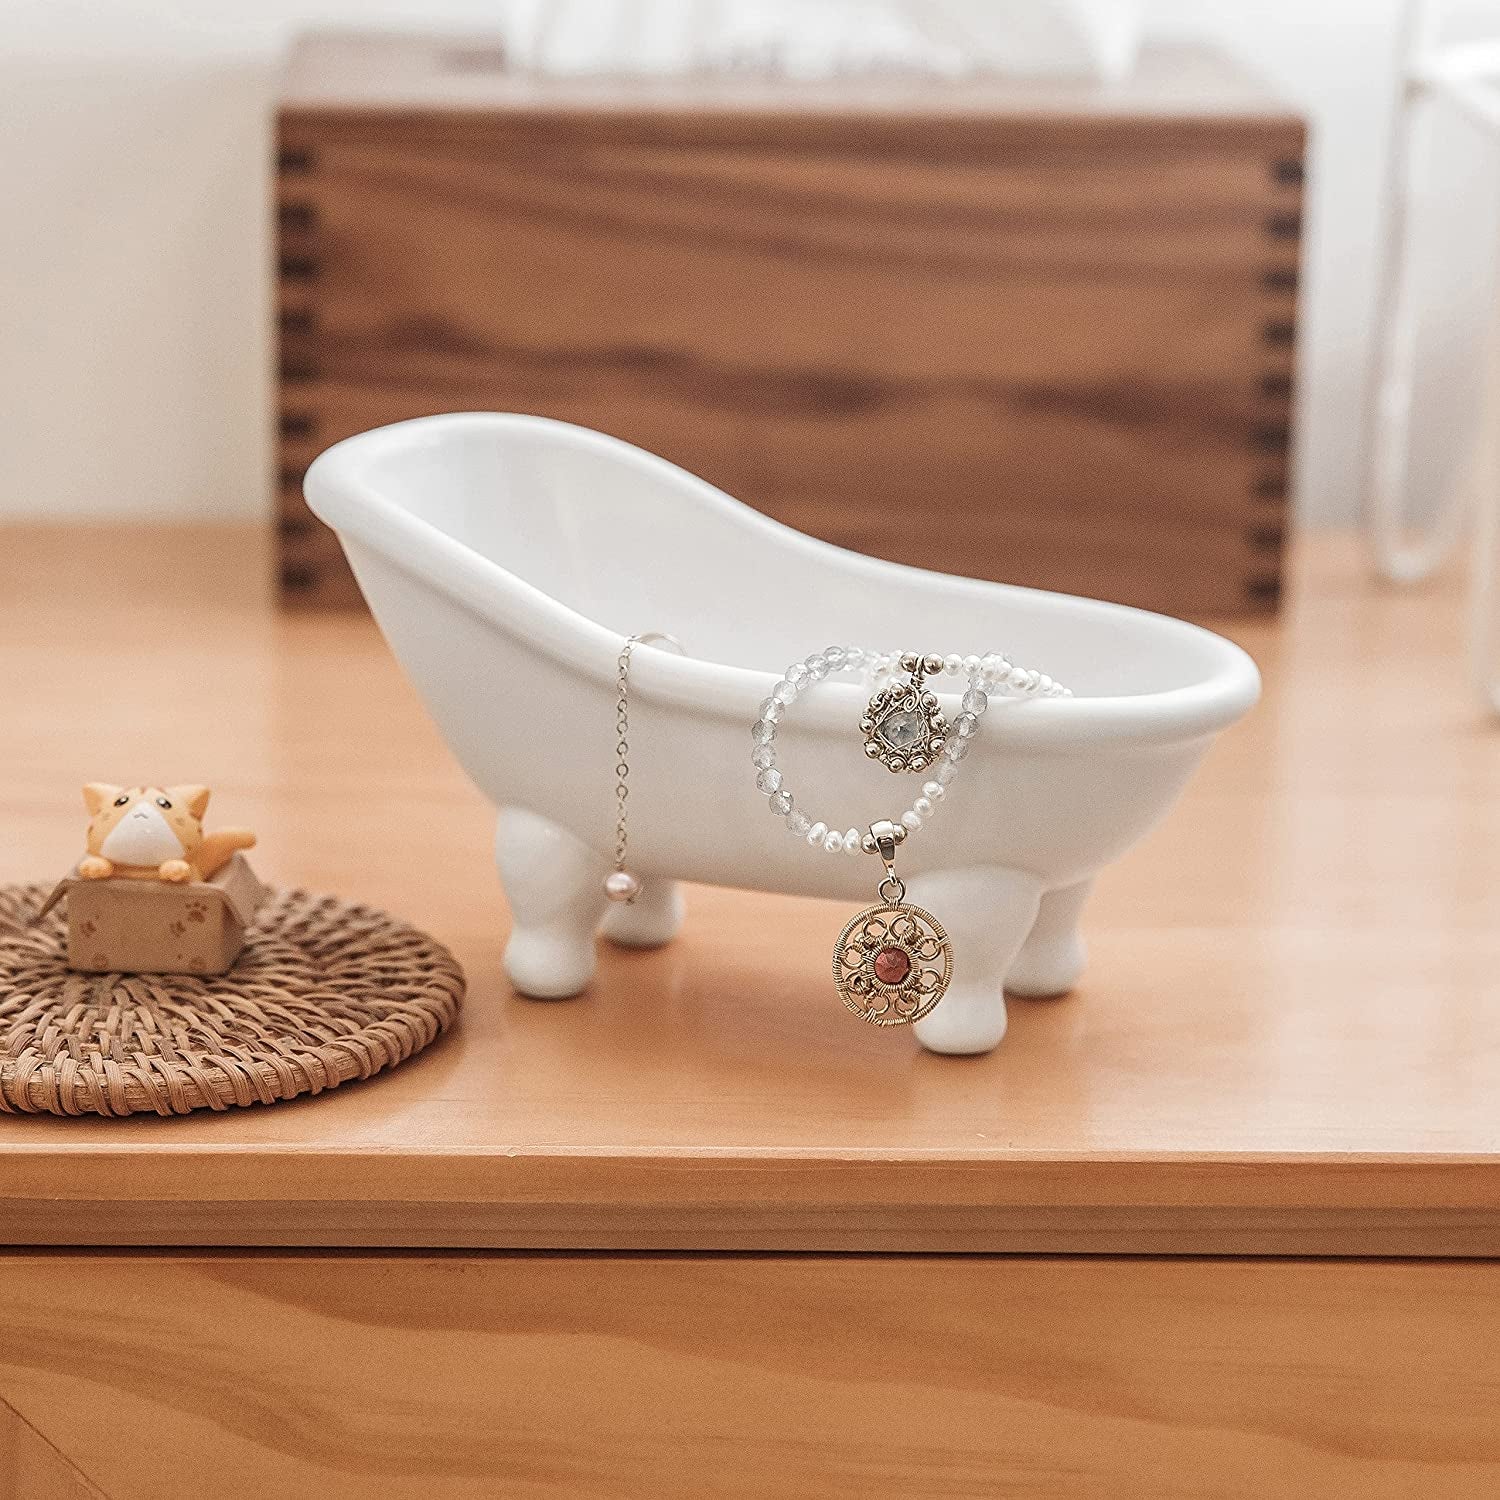 1Piece 5.6" White Ceramic Mini Bathtub Soap Dish (White)